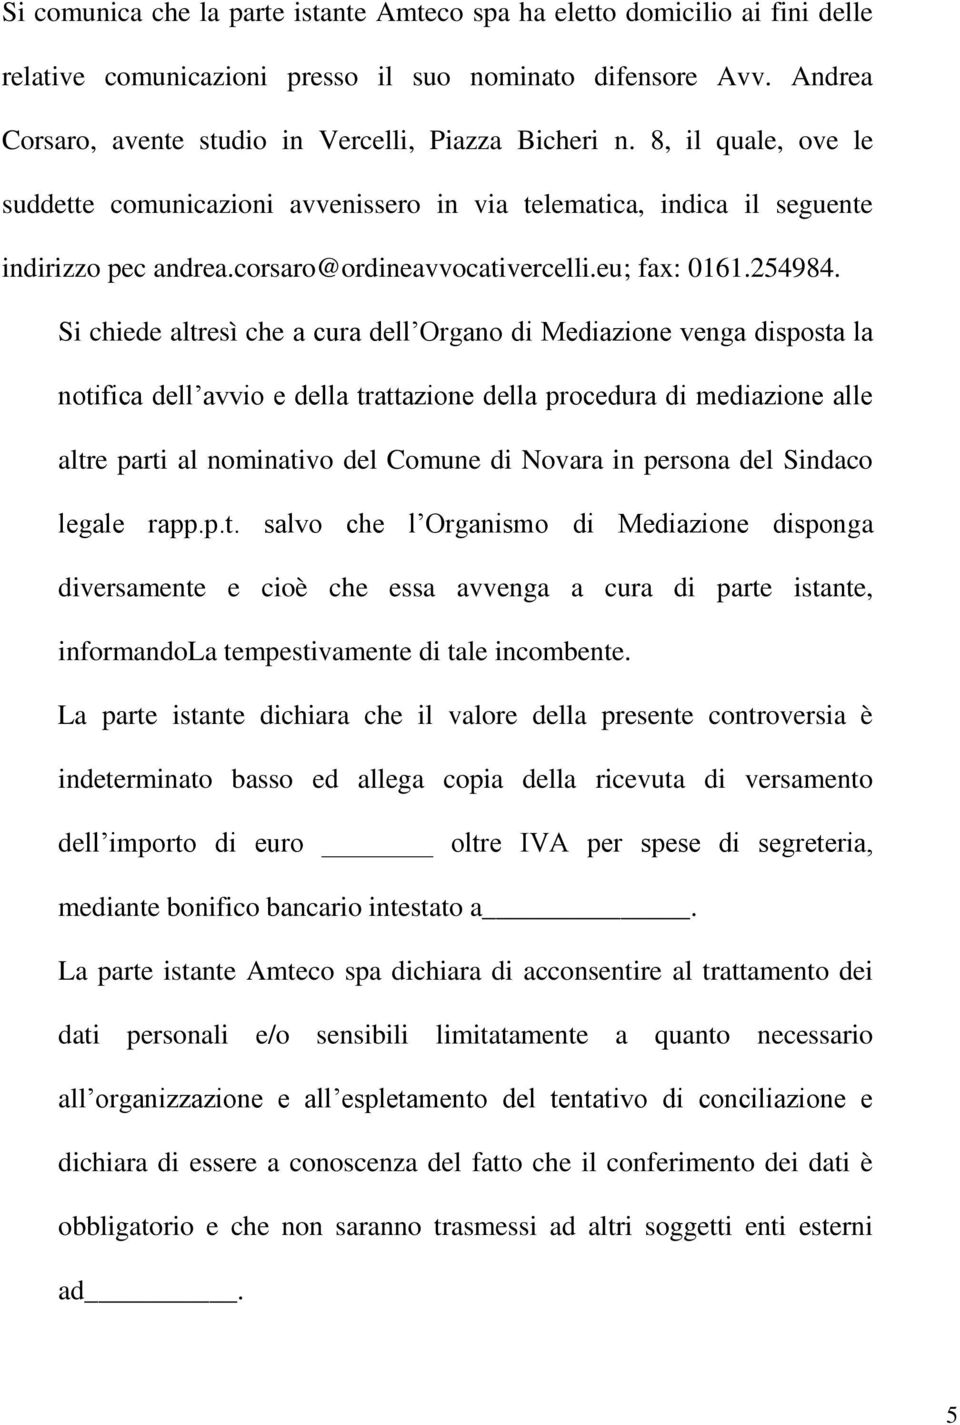 Si chiede altresì che a cura dell Organo di Mediazione venga disposta la notifica dell avvio e della trattazione della procedura di mediazione alle altre parti al nominativo del Comune di Novara in